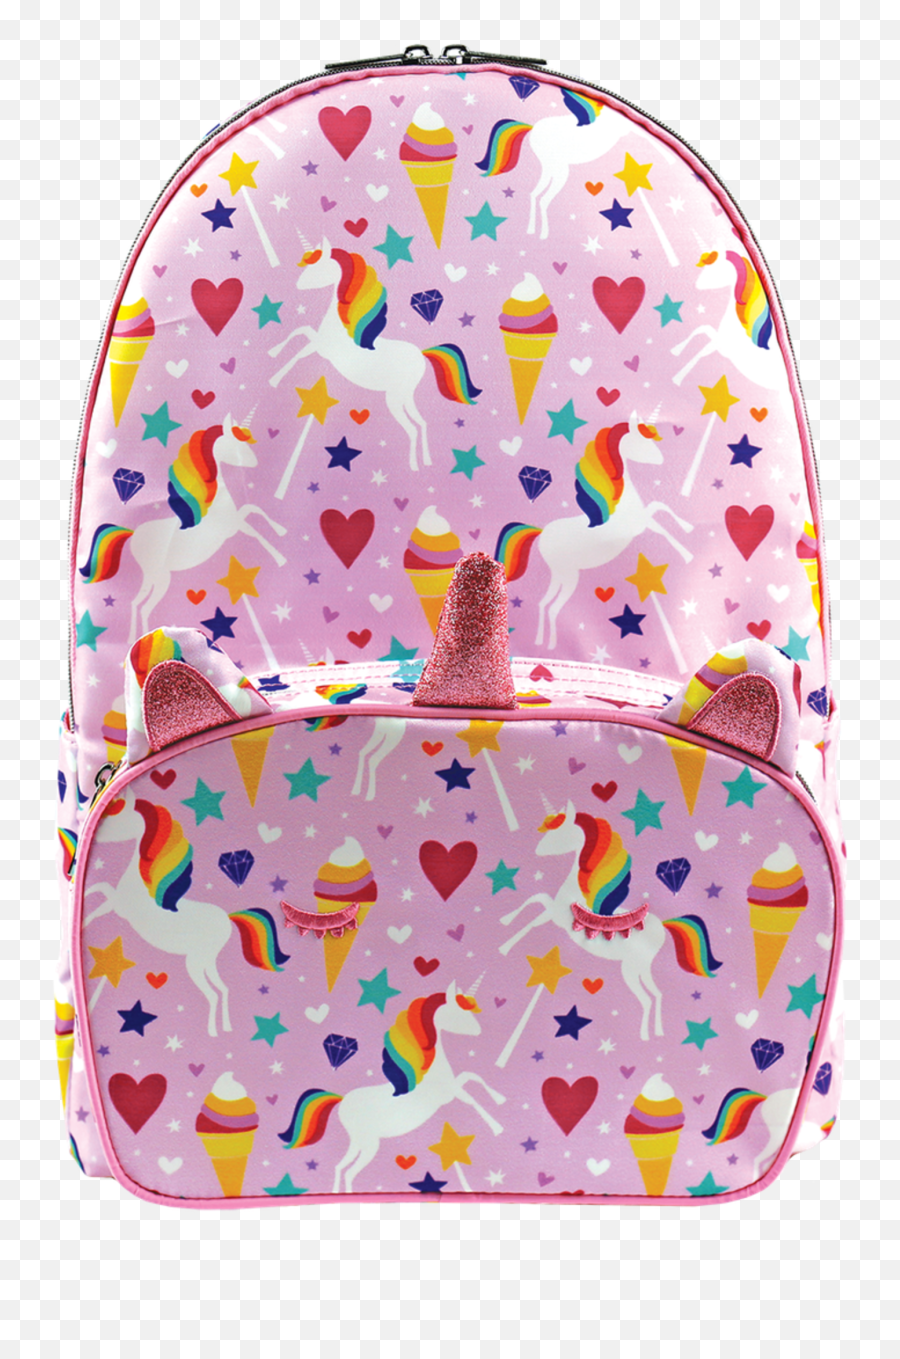 Iscream Magical Unicorn Backpack - Girly Emoji,Guess The Emoji Books And Backpack